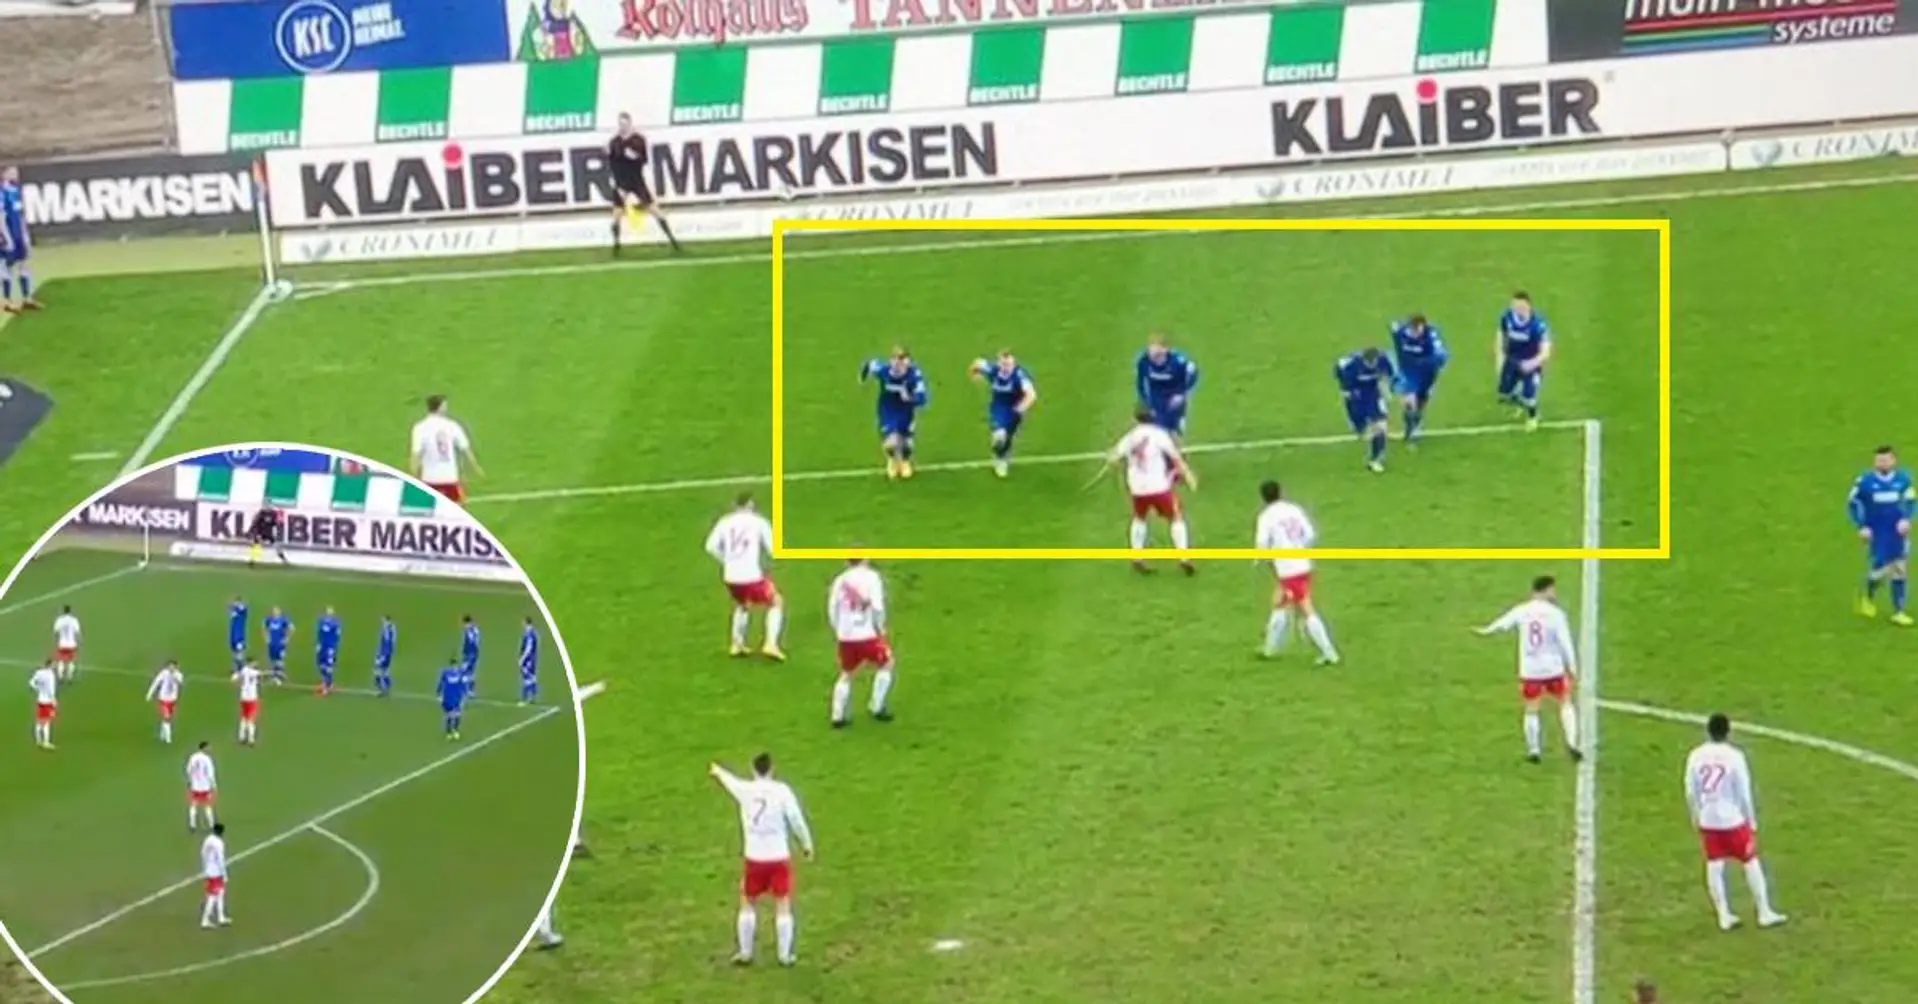 I tedeschi del Karlsruher lasciano gli avversari a bocca aperta grazie ad un calcio d'angolo creativo e inaspettato